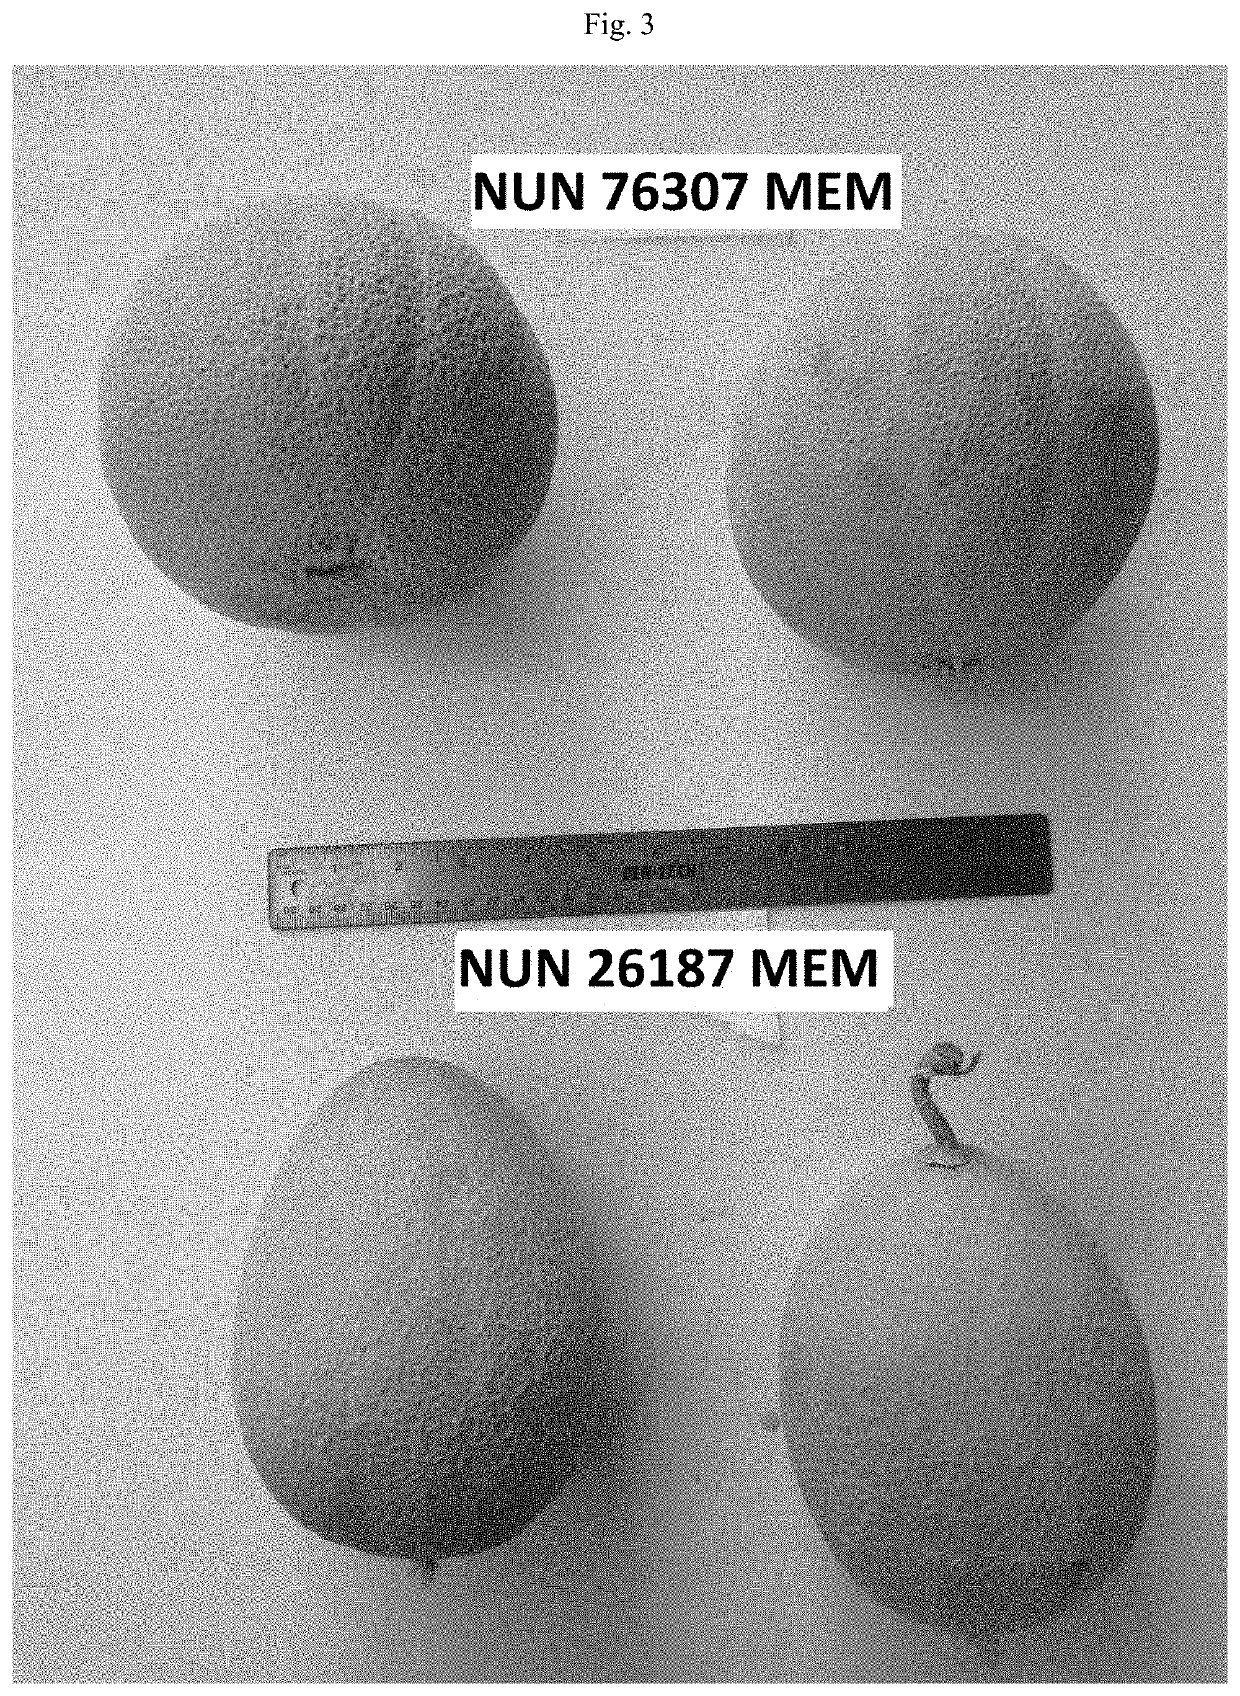 Melon variety nun 76307 mem